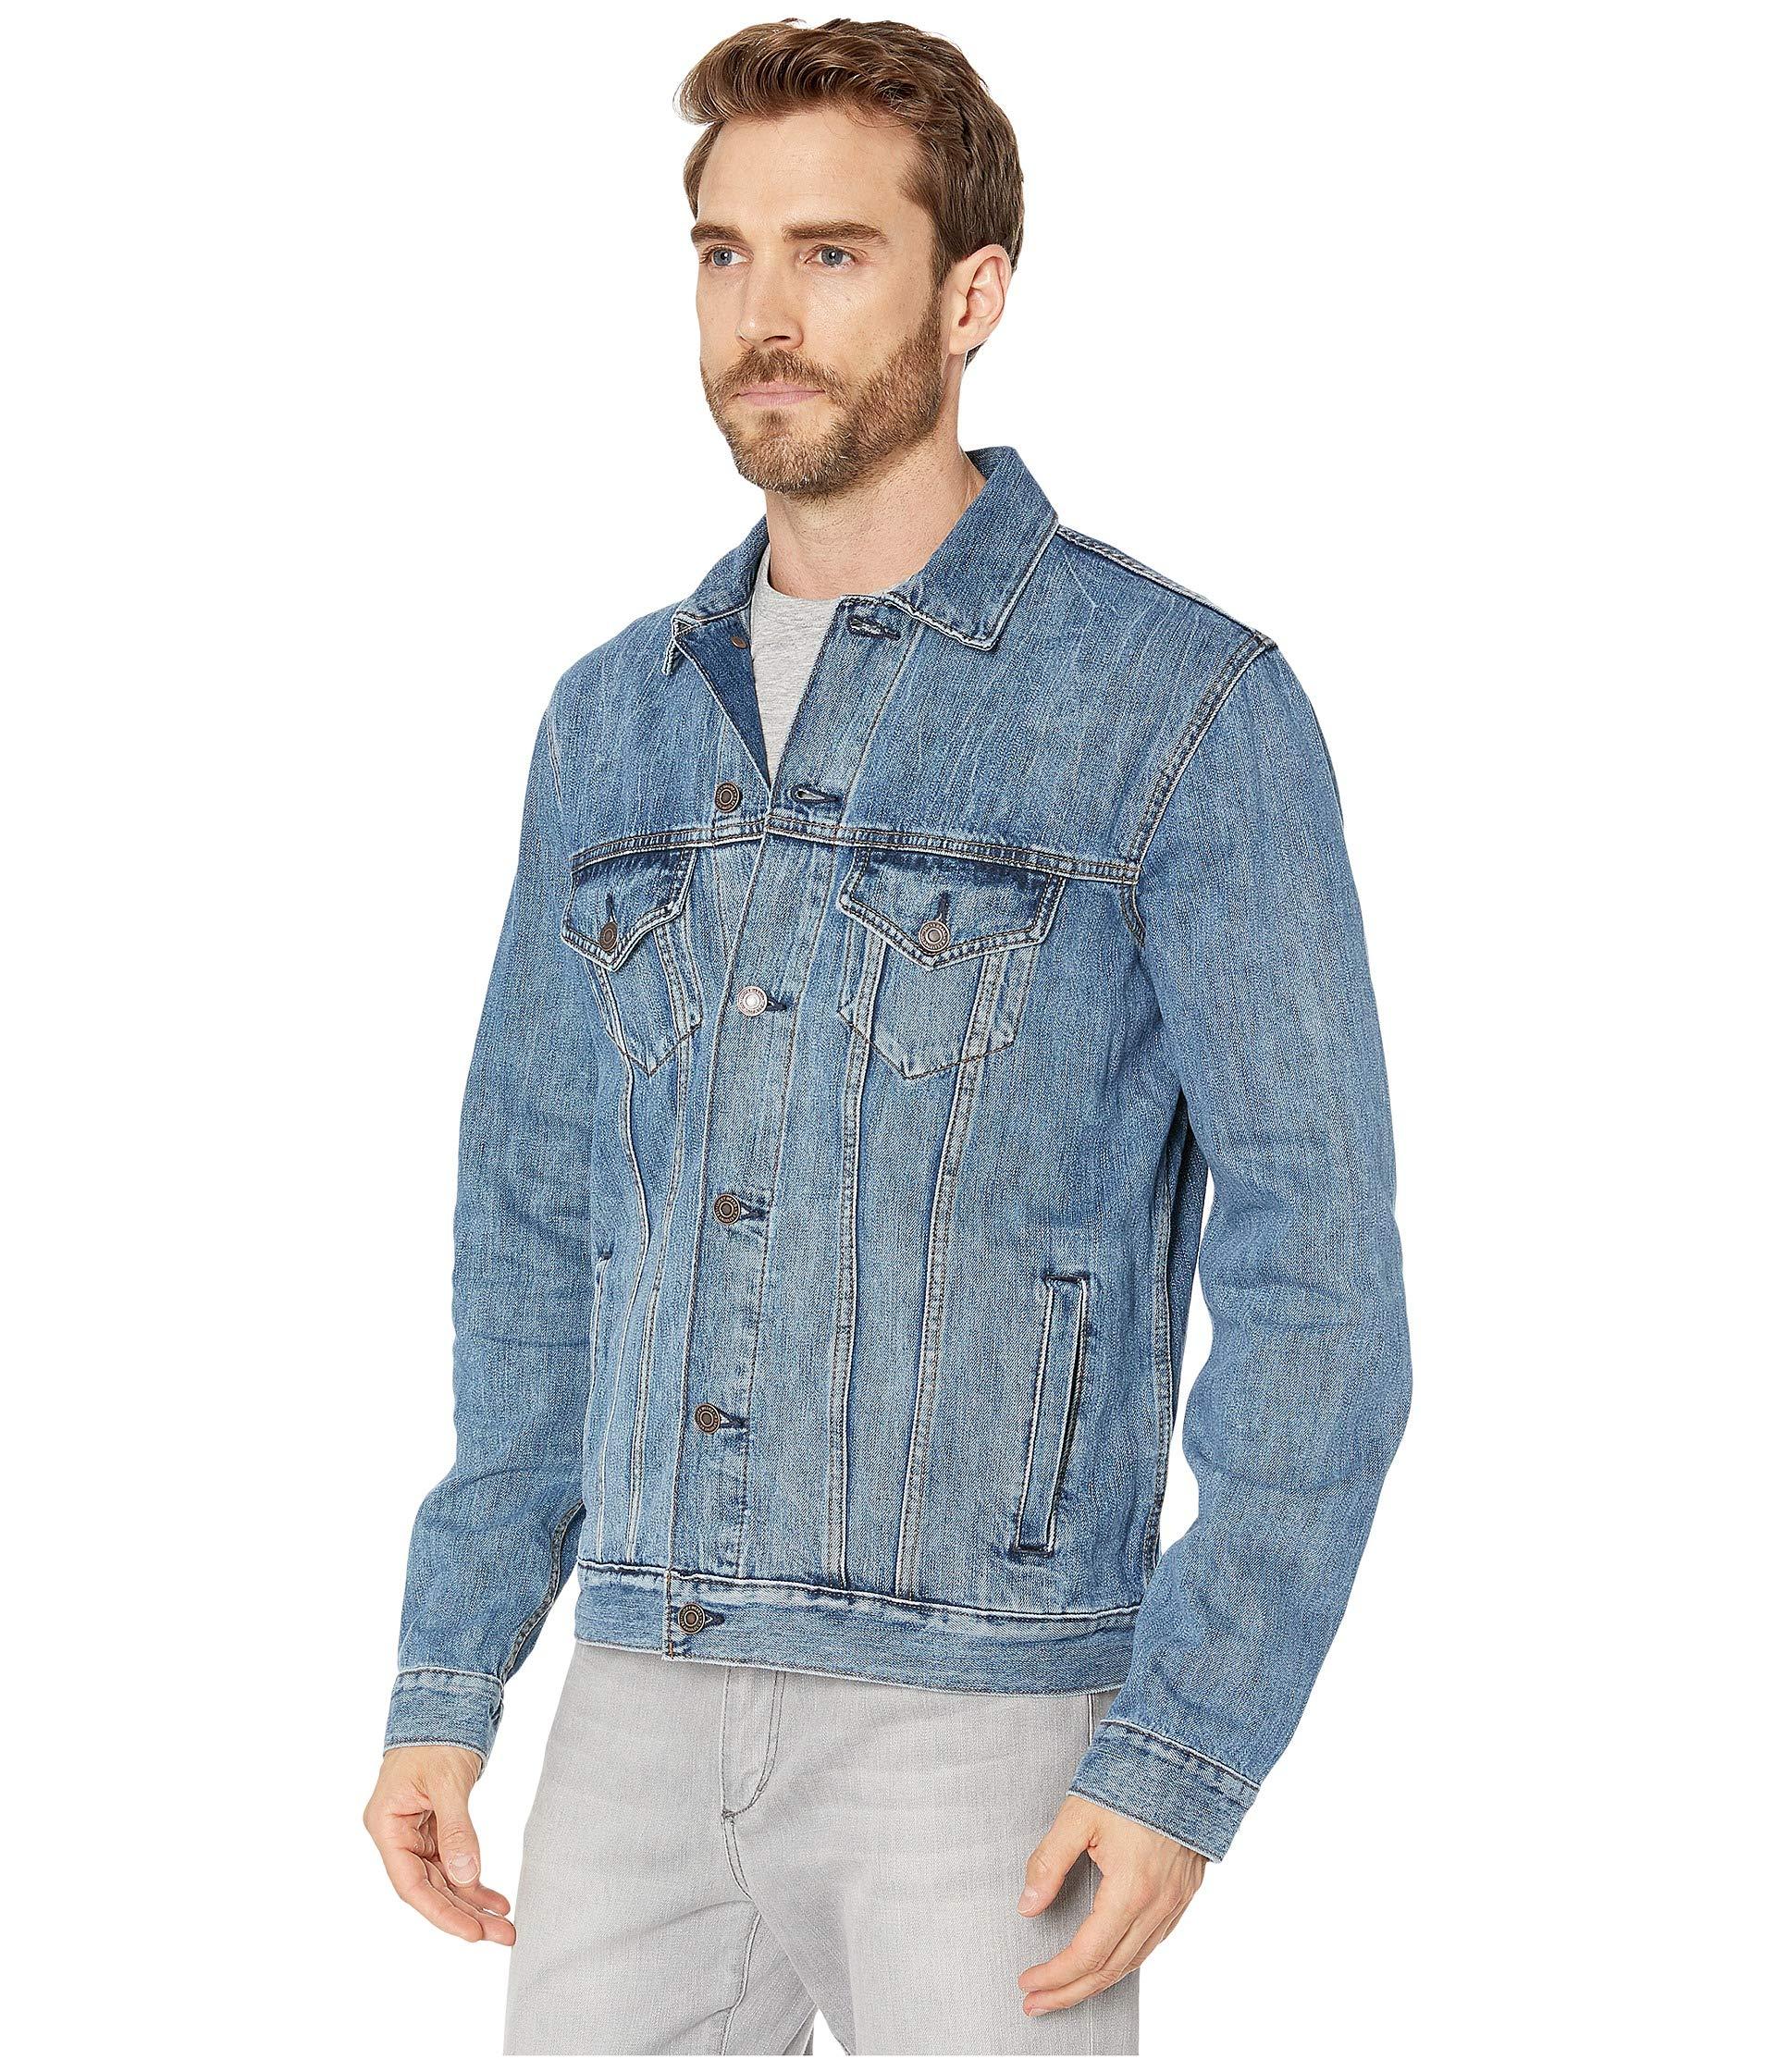 Lucky Brand Denim Medium Blue Trucker Jacket for Men - Lyst